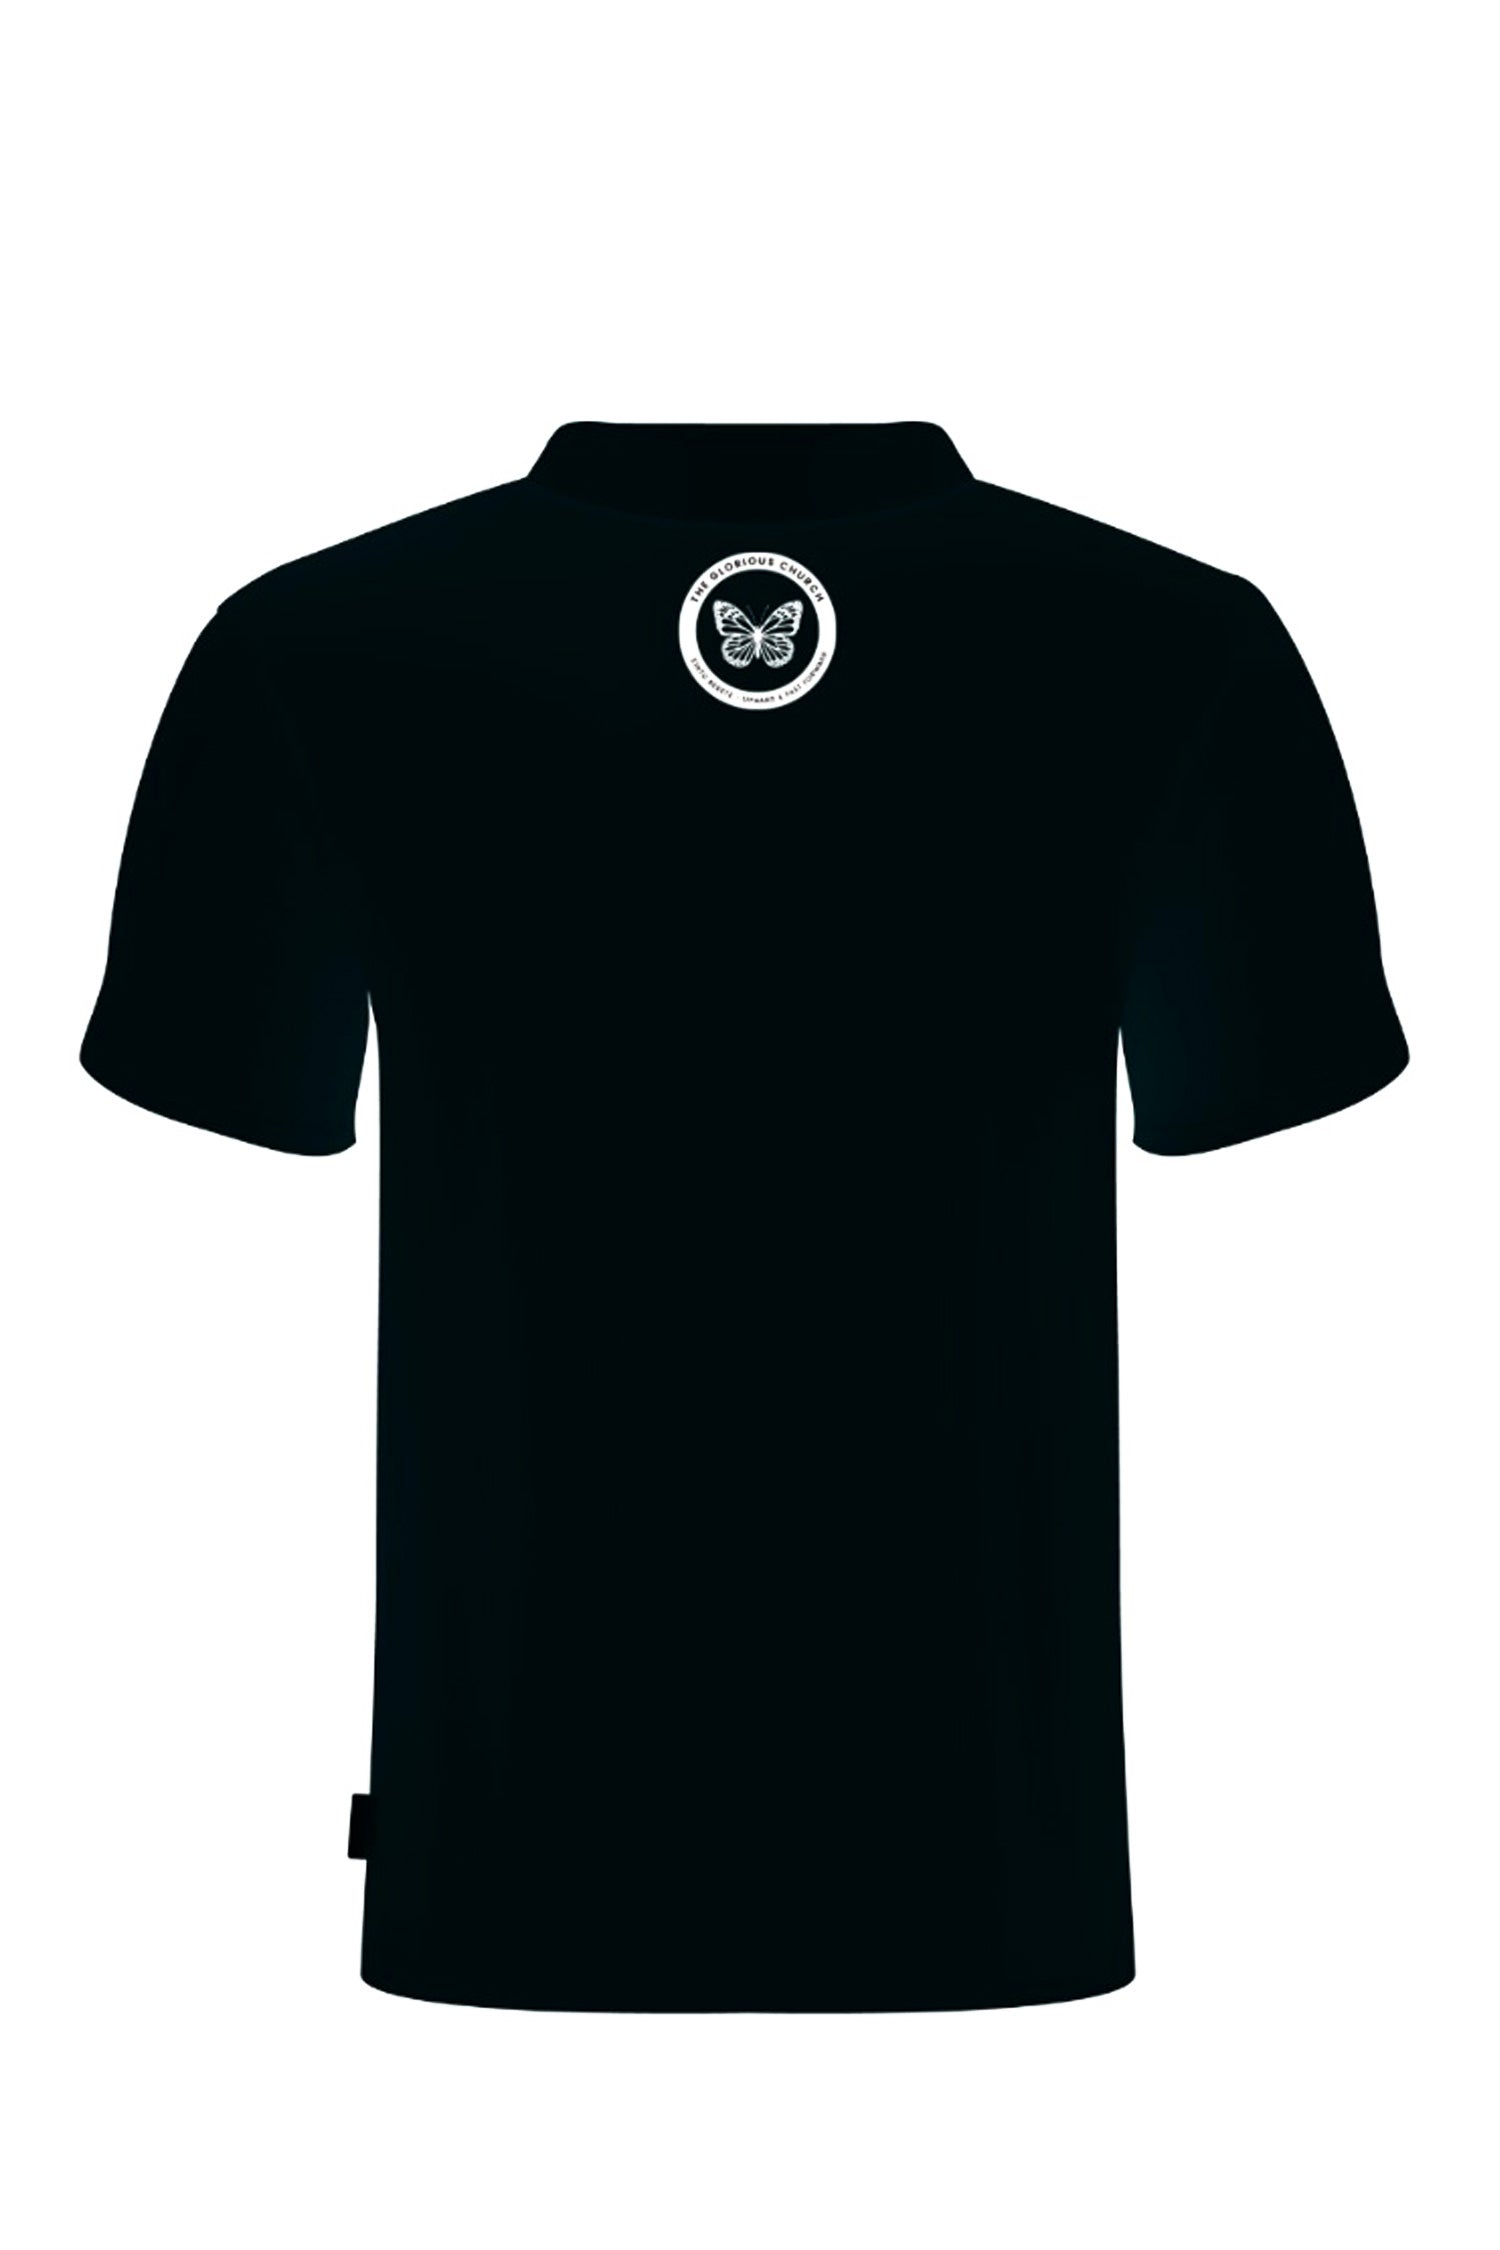 PJFM | TGC - Black Polo Tshirt - Gents